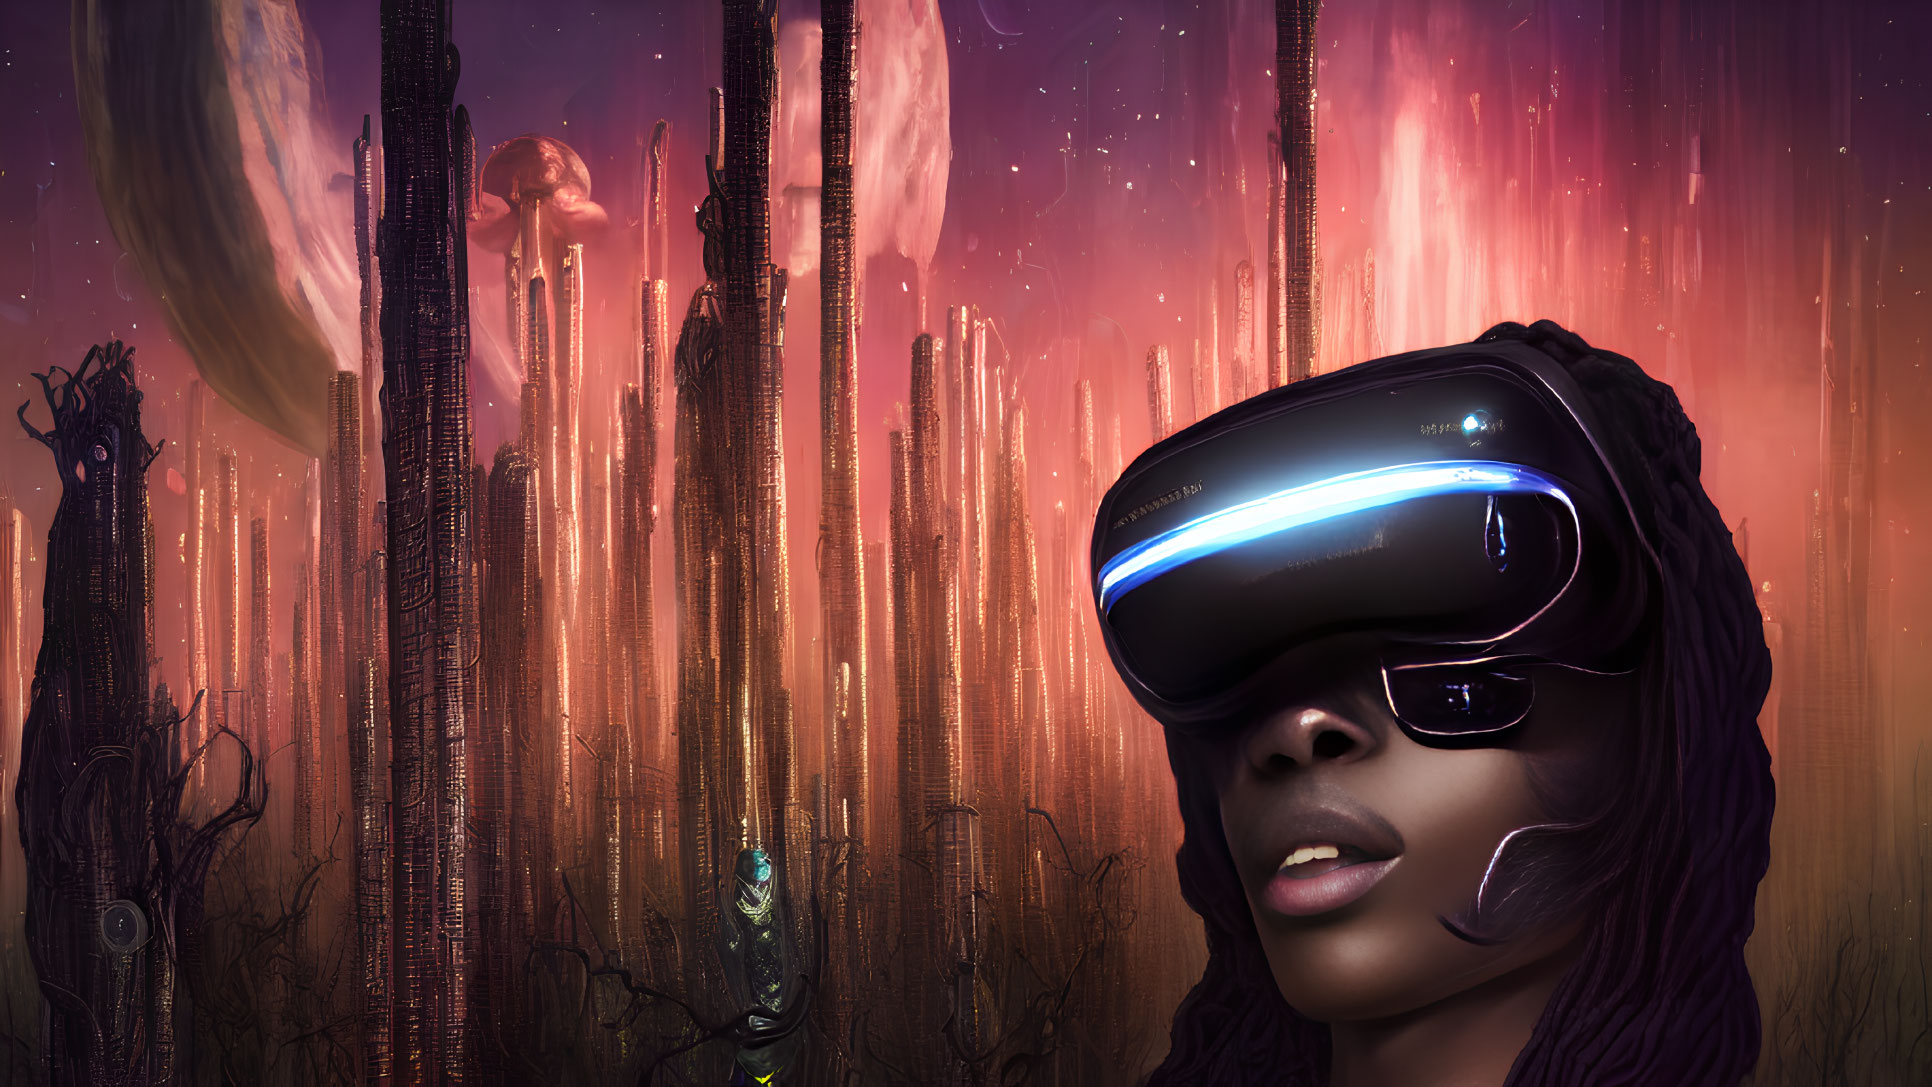 Person in Futuristic VR Headset in Surreal Landscape